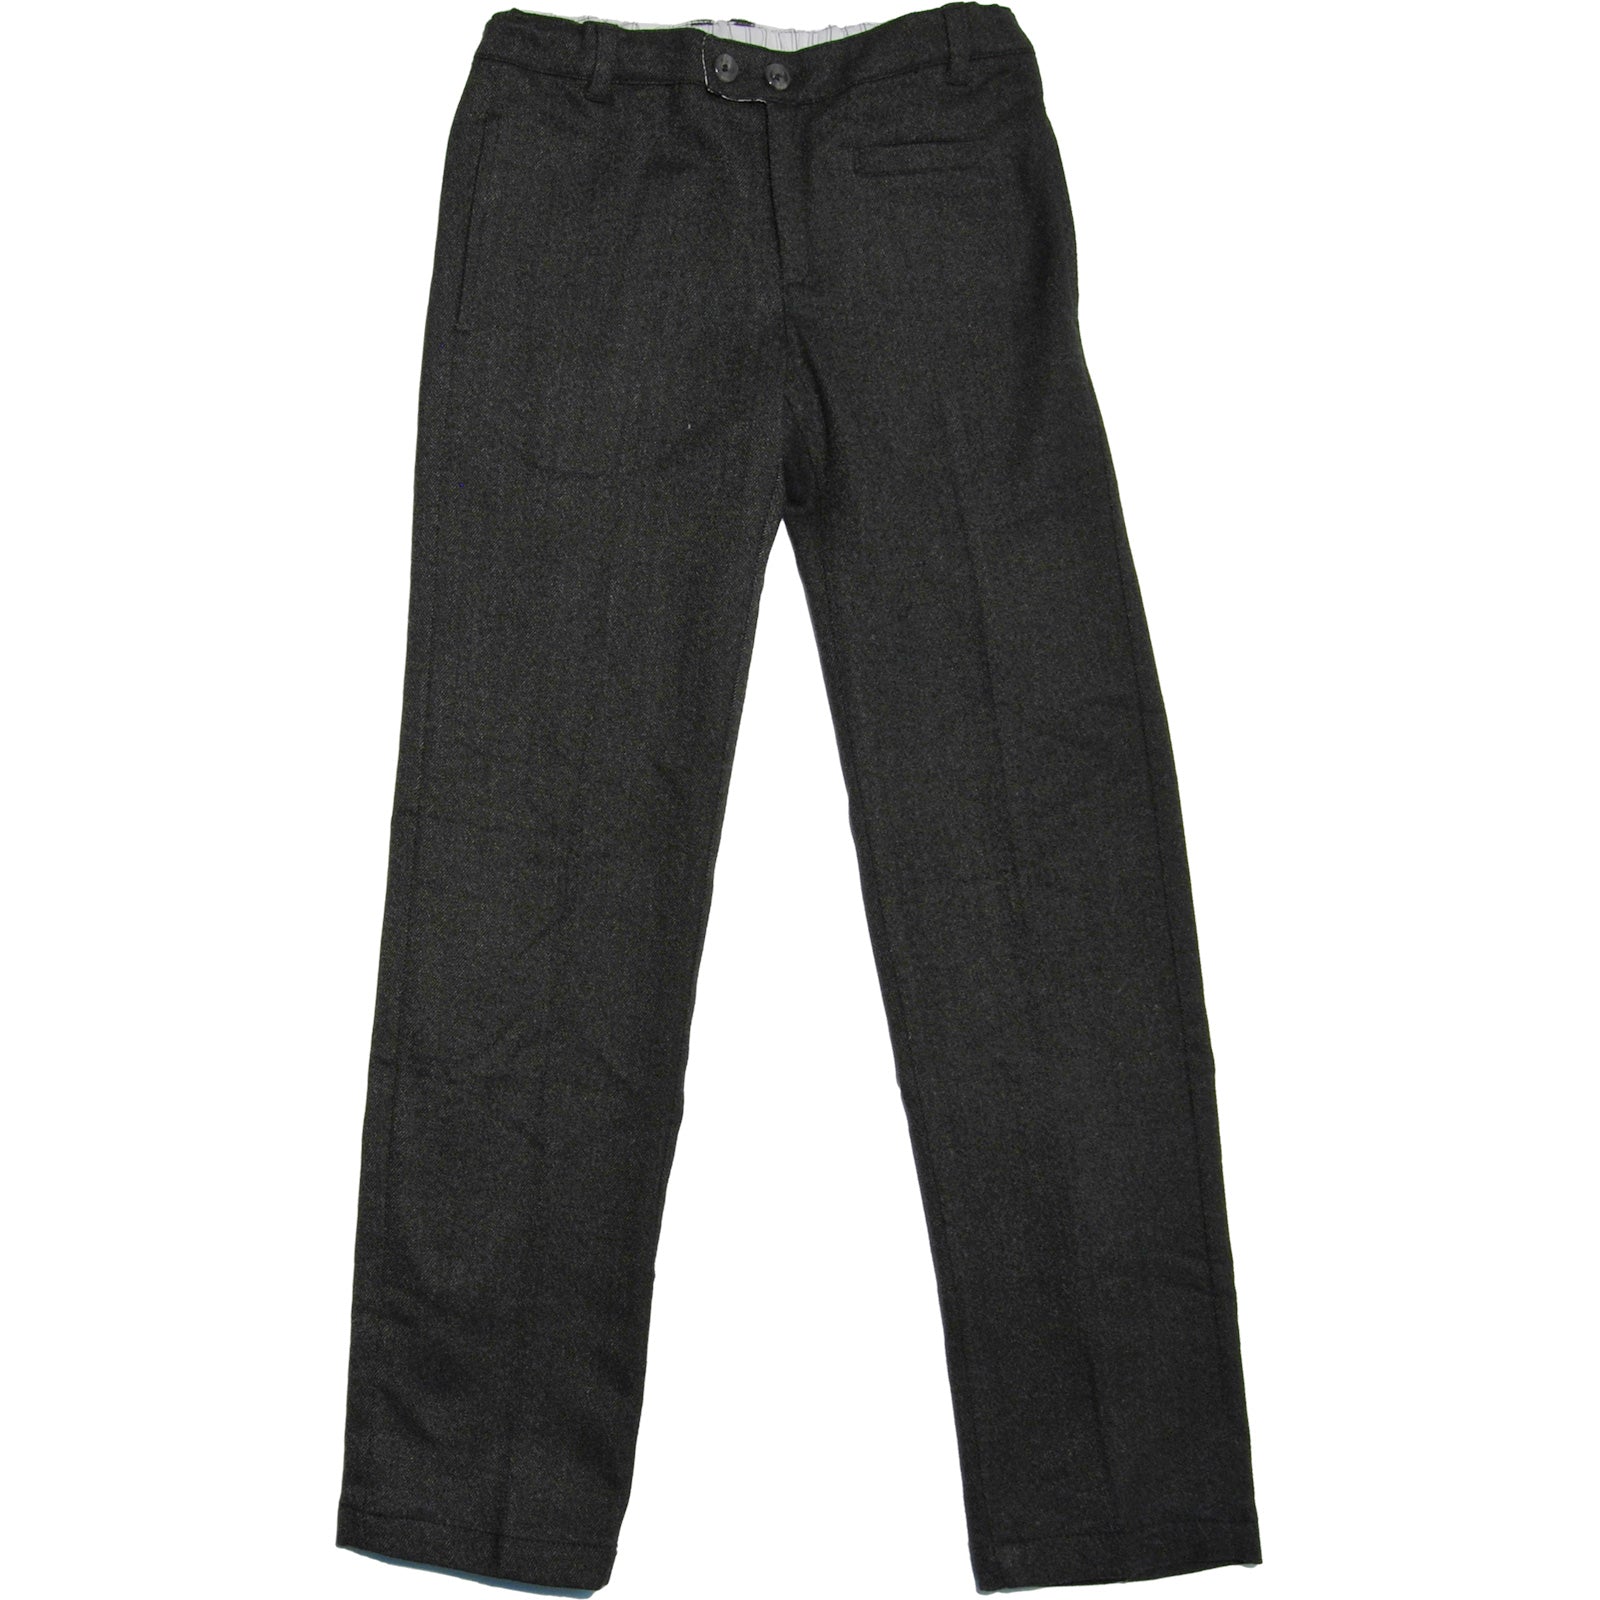 
  Pantalone classico in tweed dellla linea abbigliamento bambino Mirtillo, con tasche laterali, ...